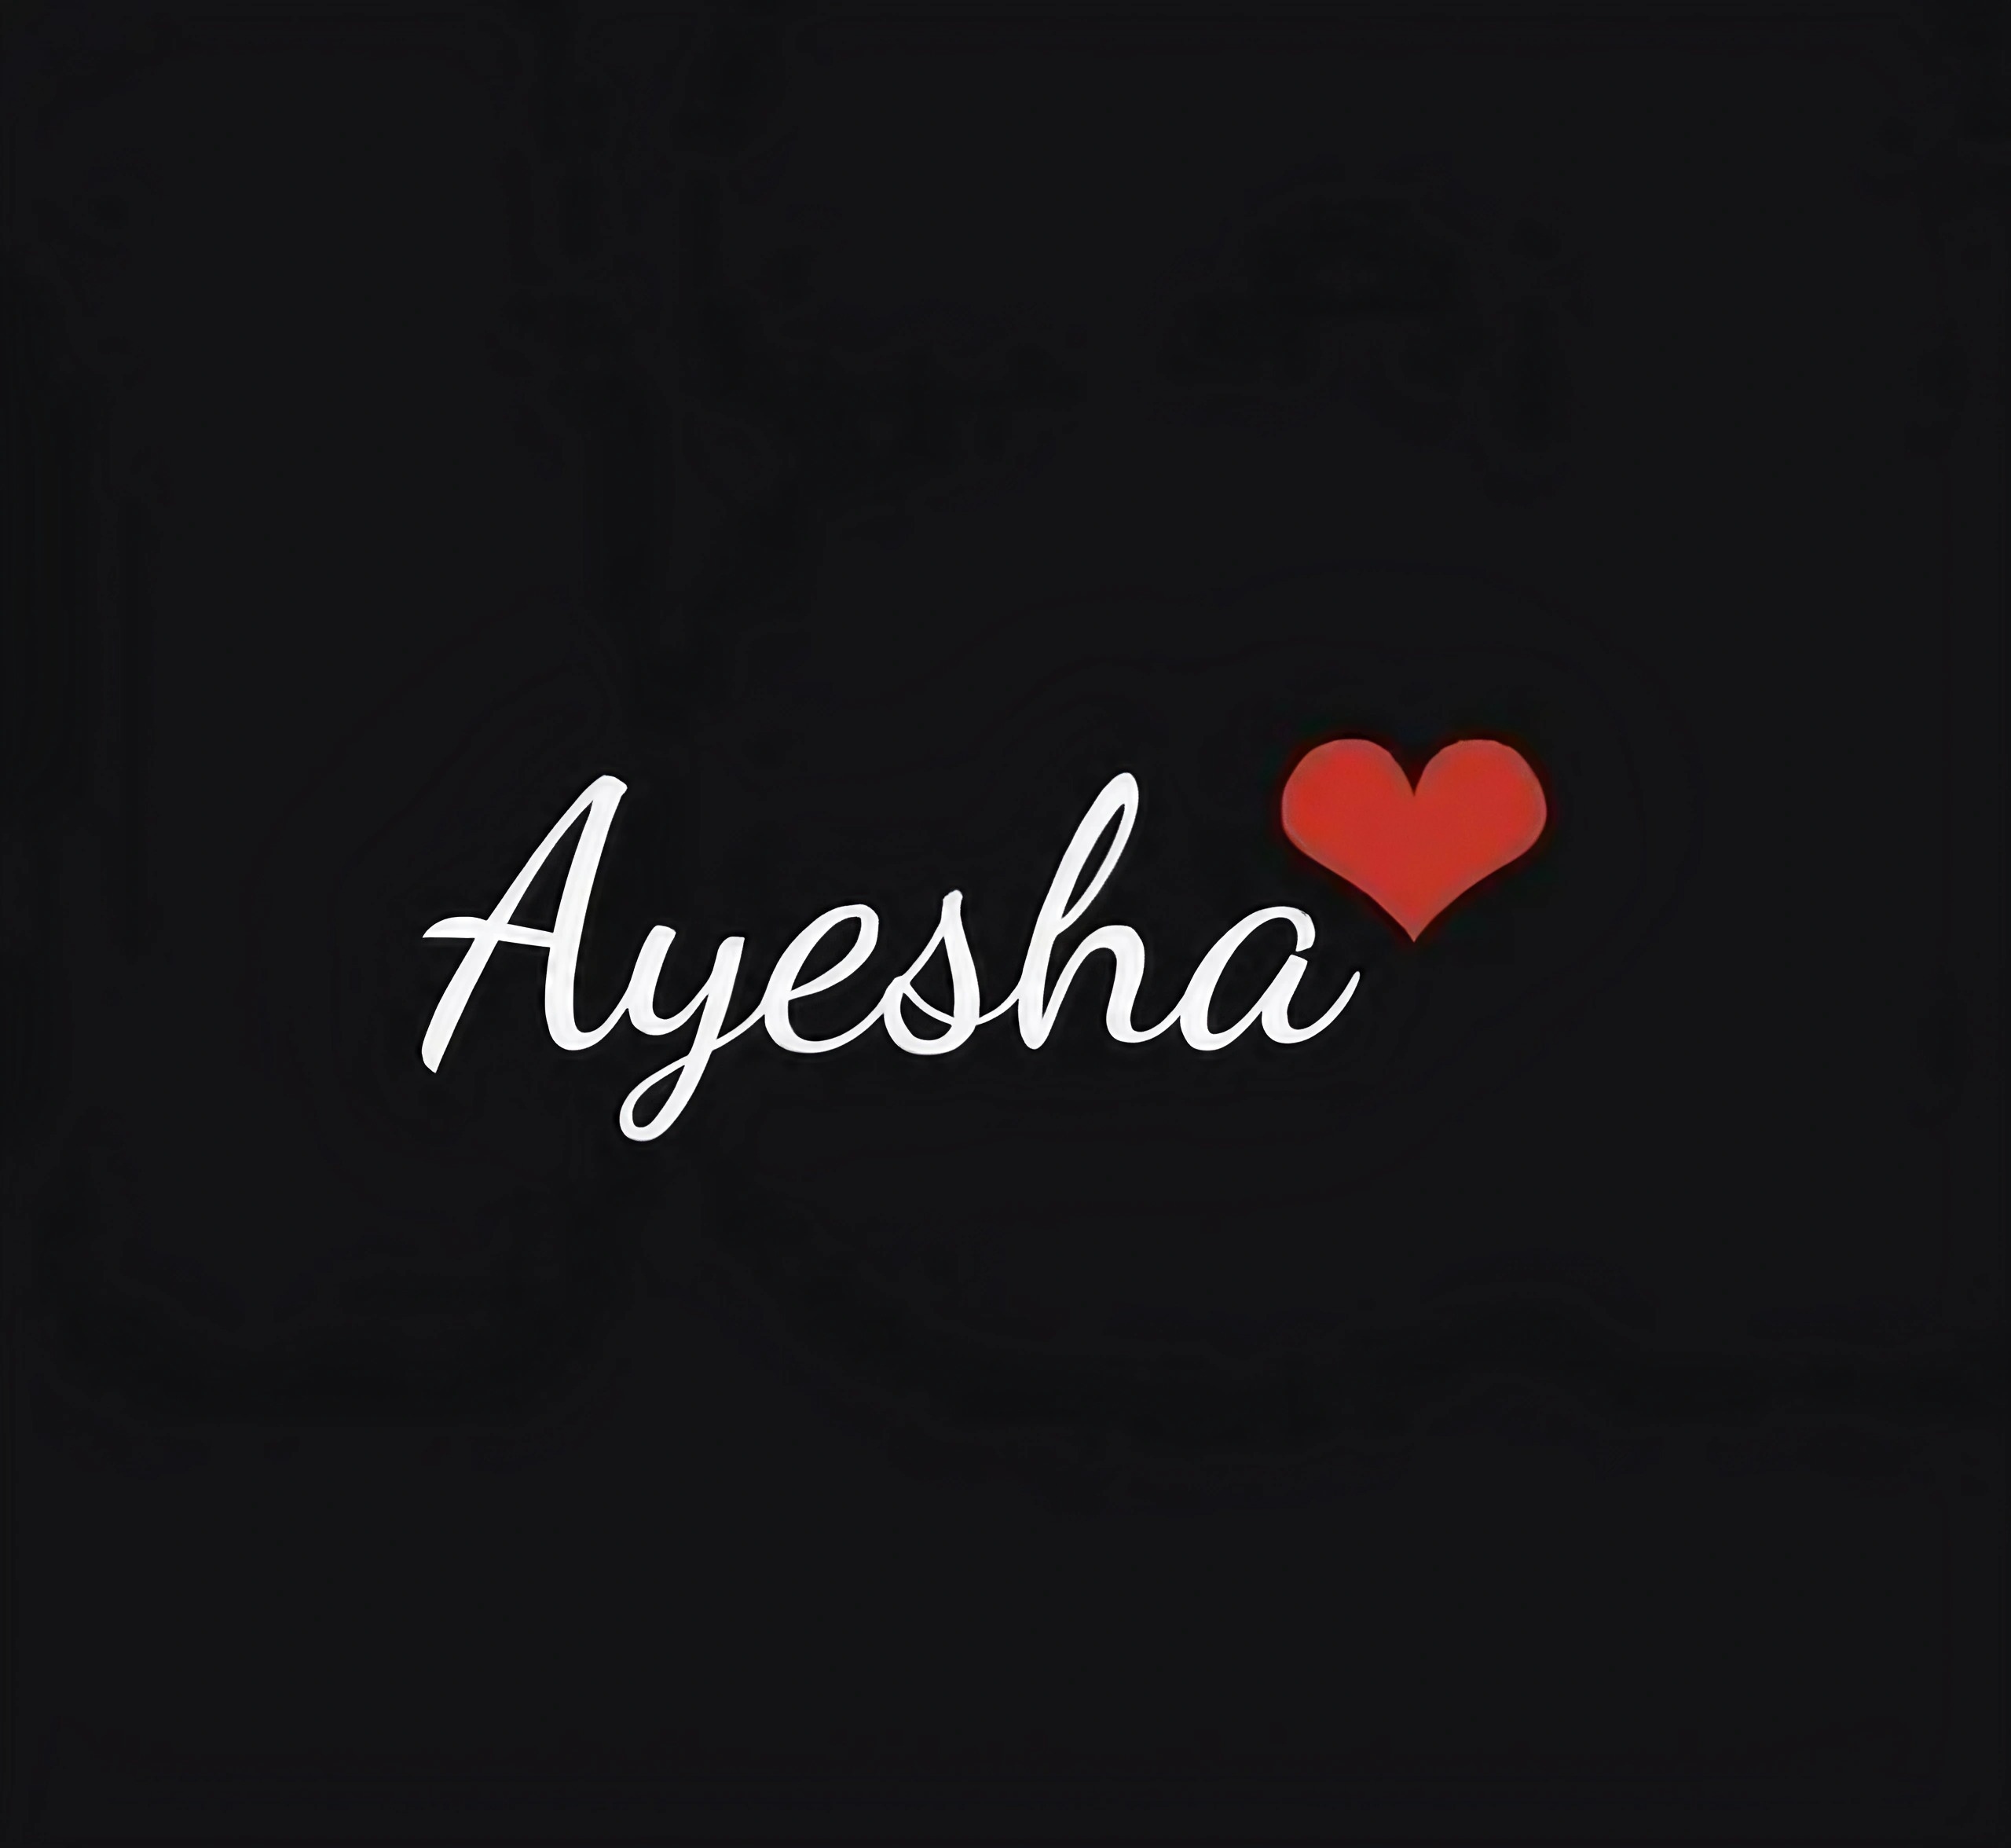 Ayesha Name - Black Background